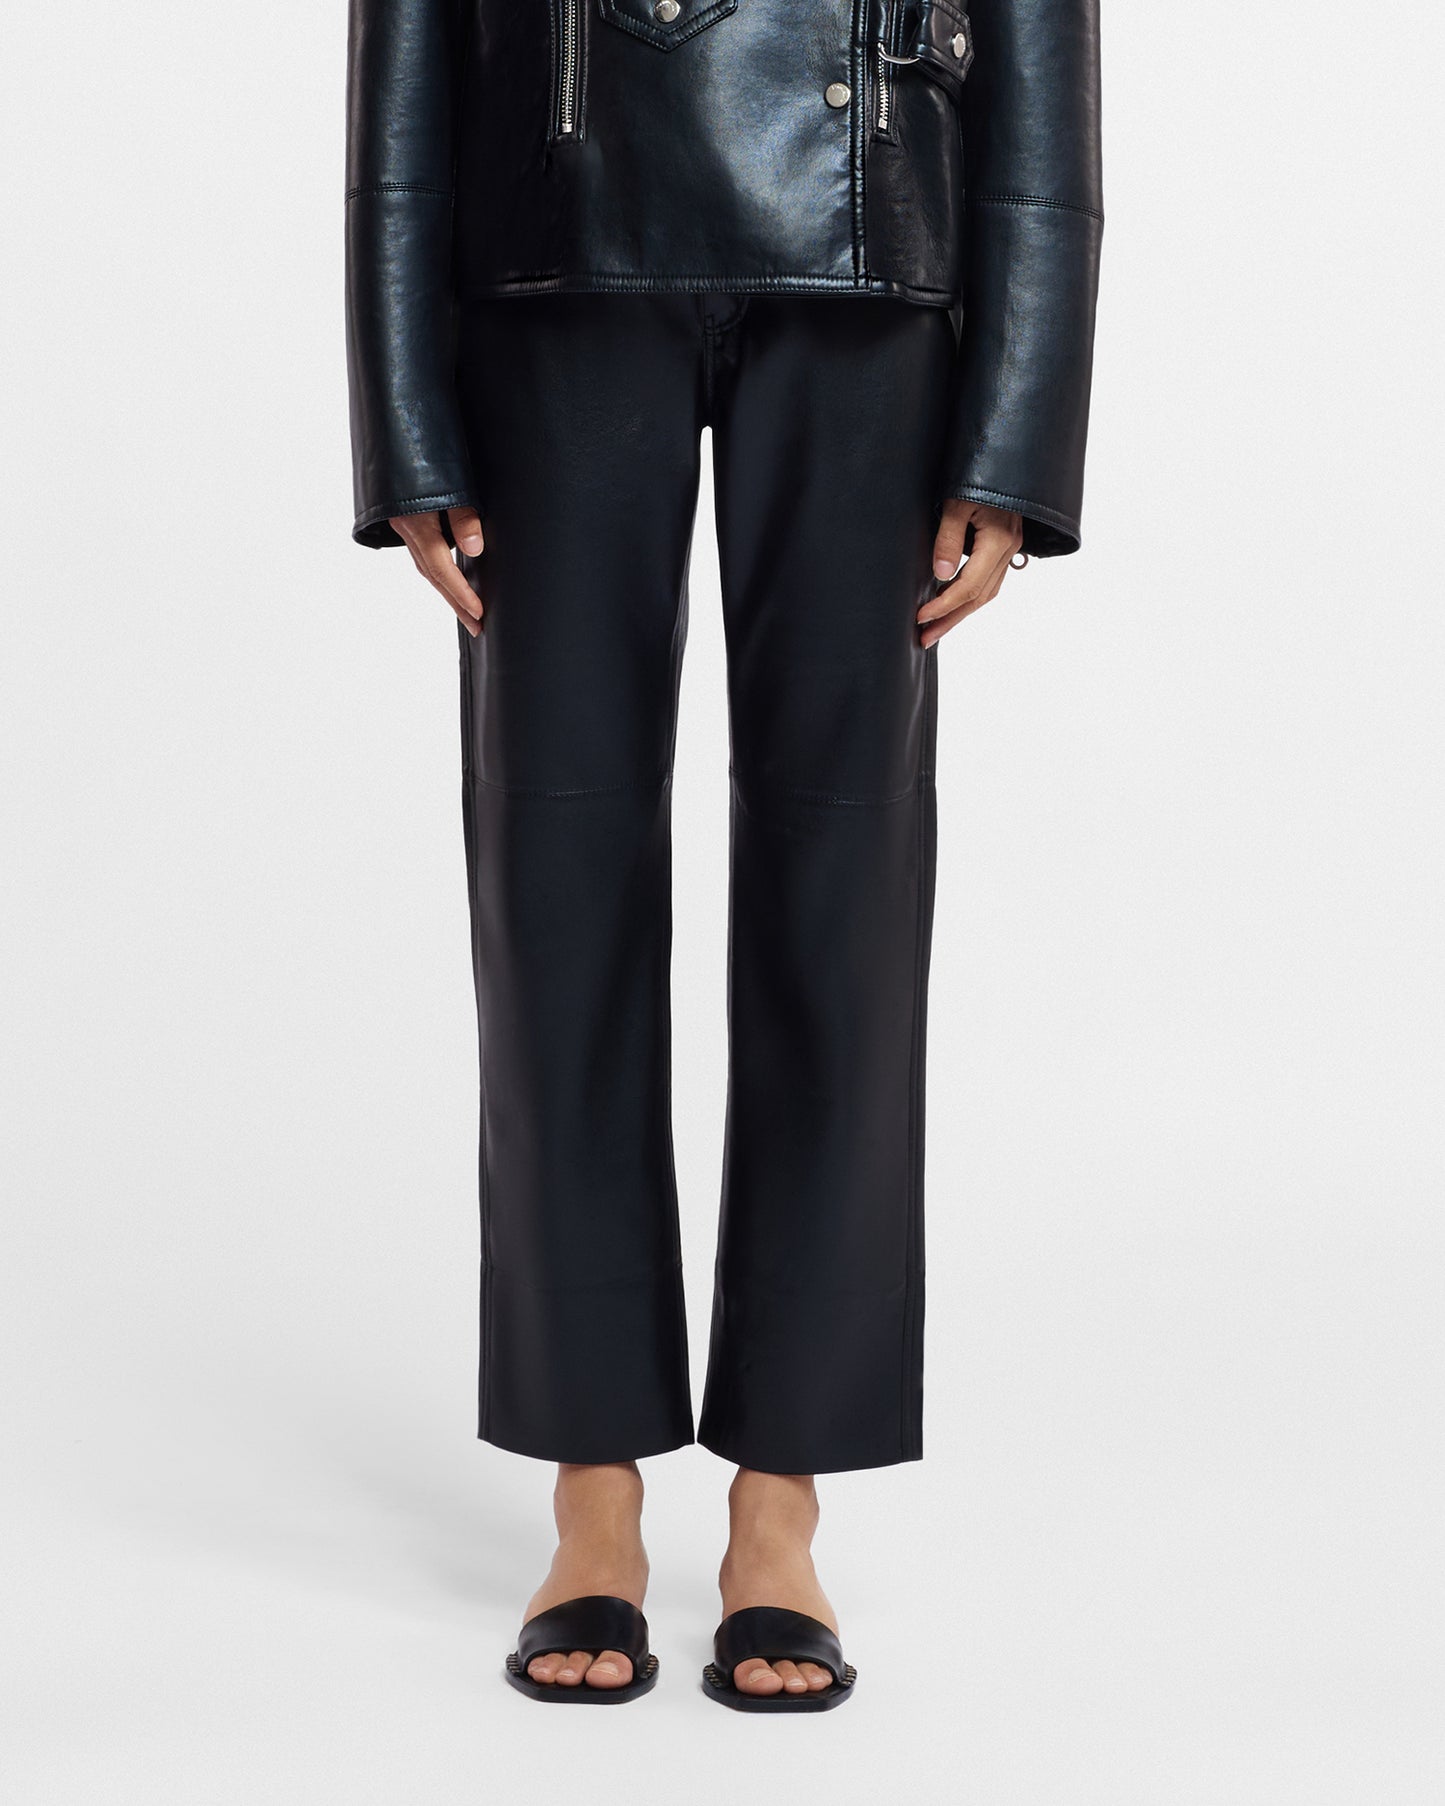 Vinni - Okobor™ Alt-Leather Pants - Black